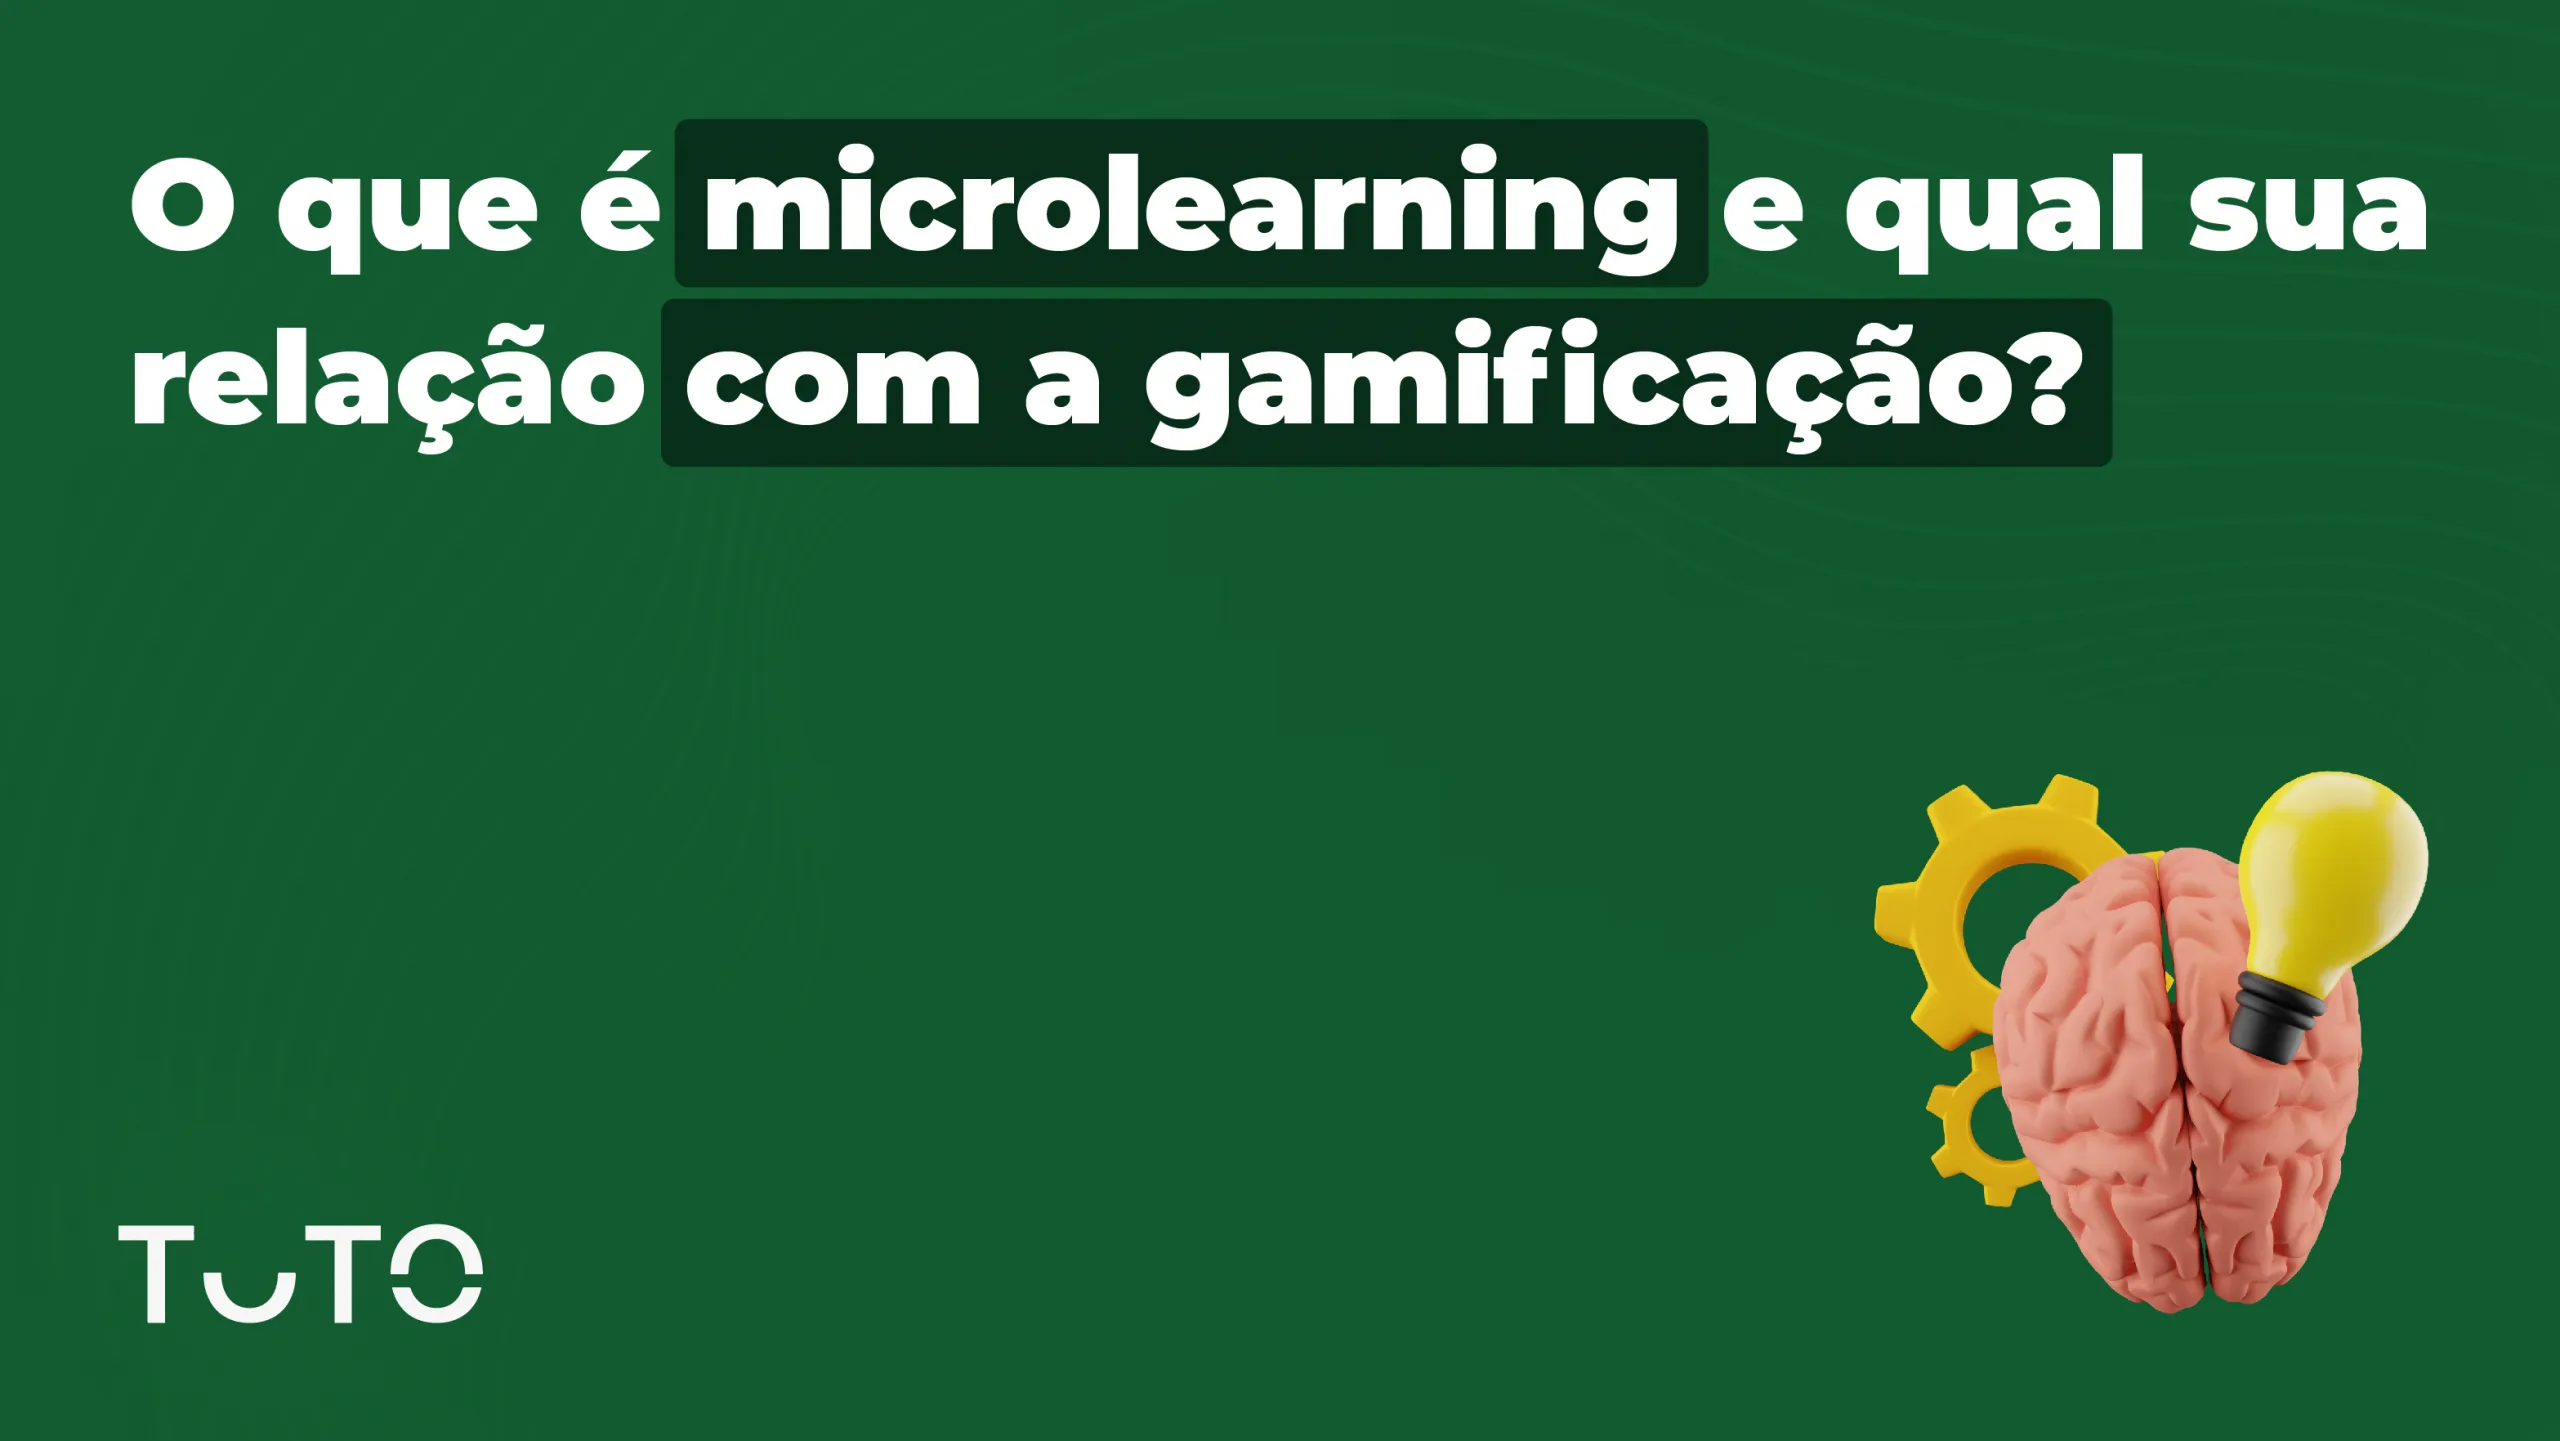 O que é microlearning e qual sua relação com a gamificação?